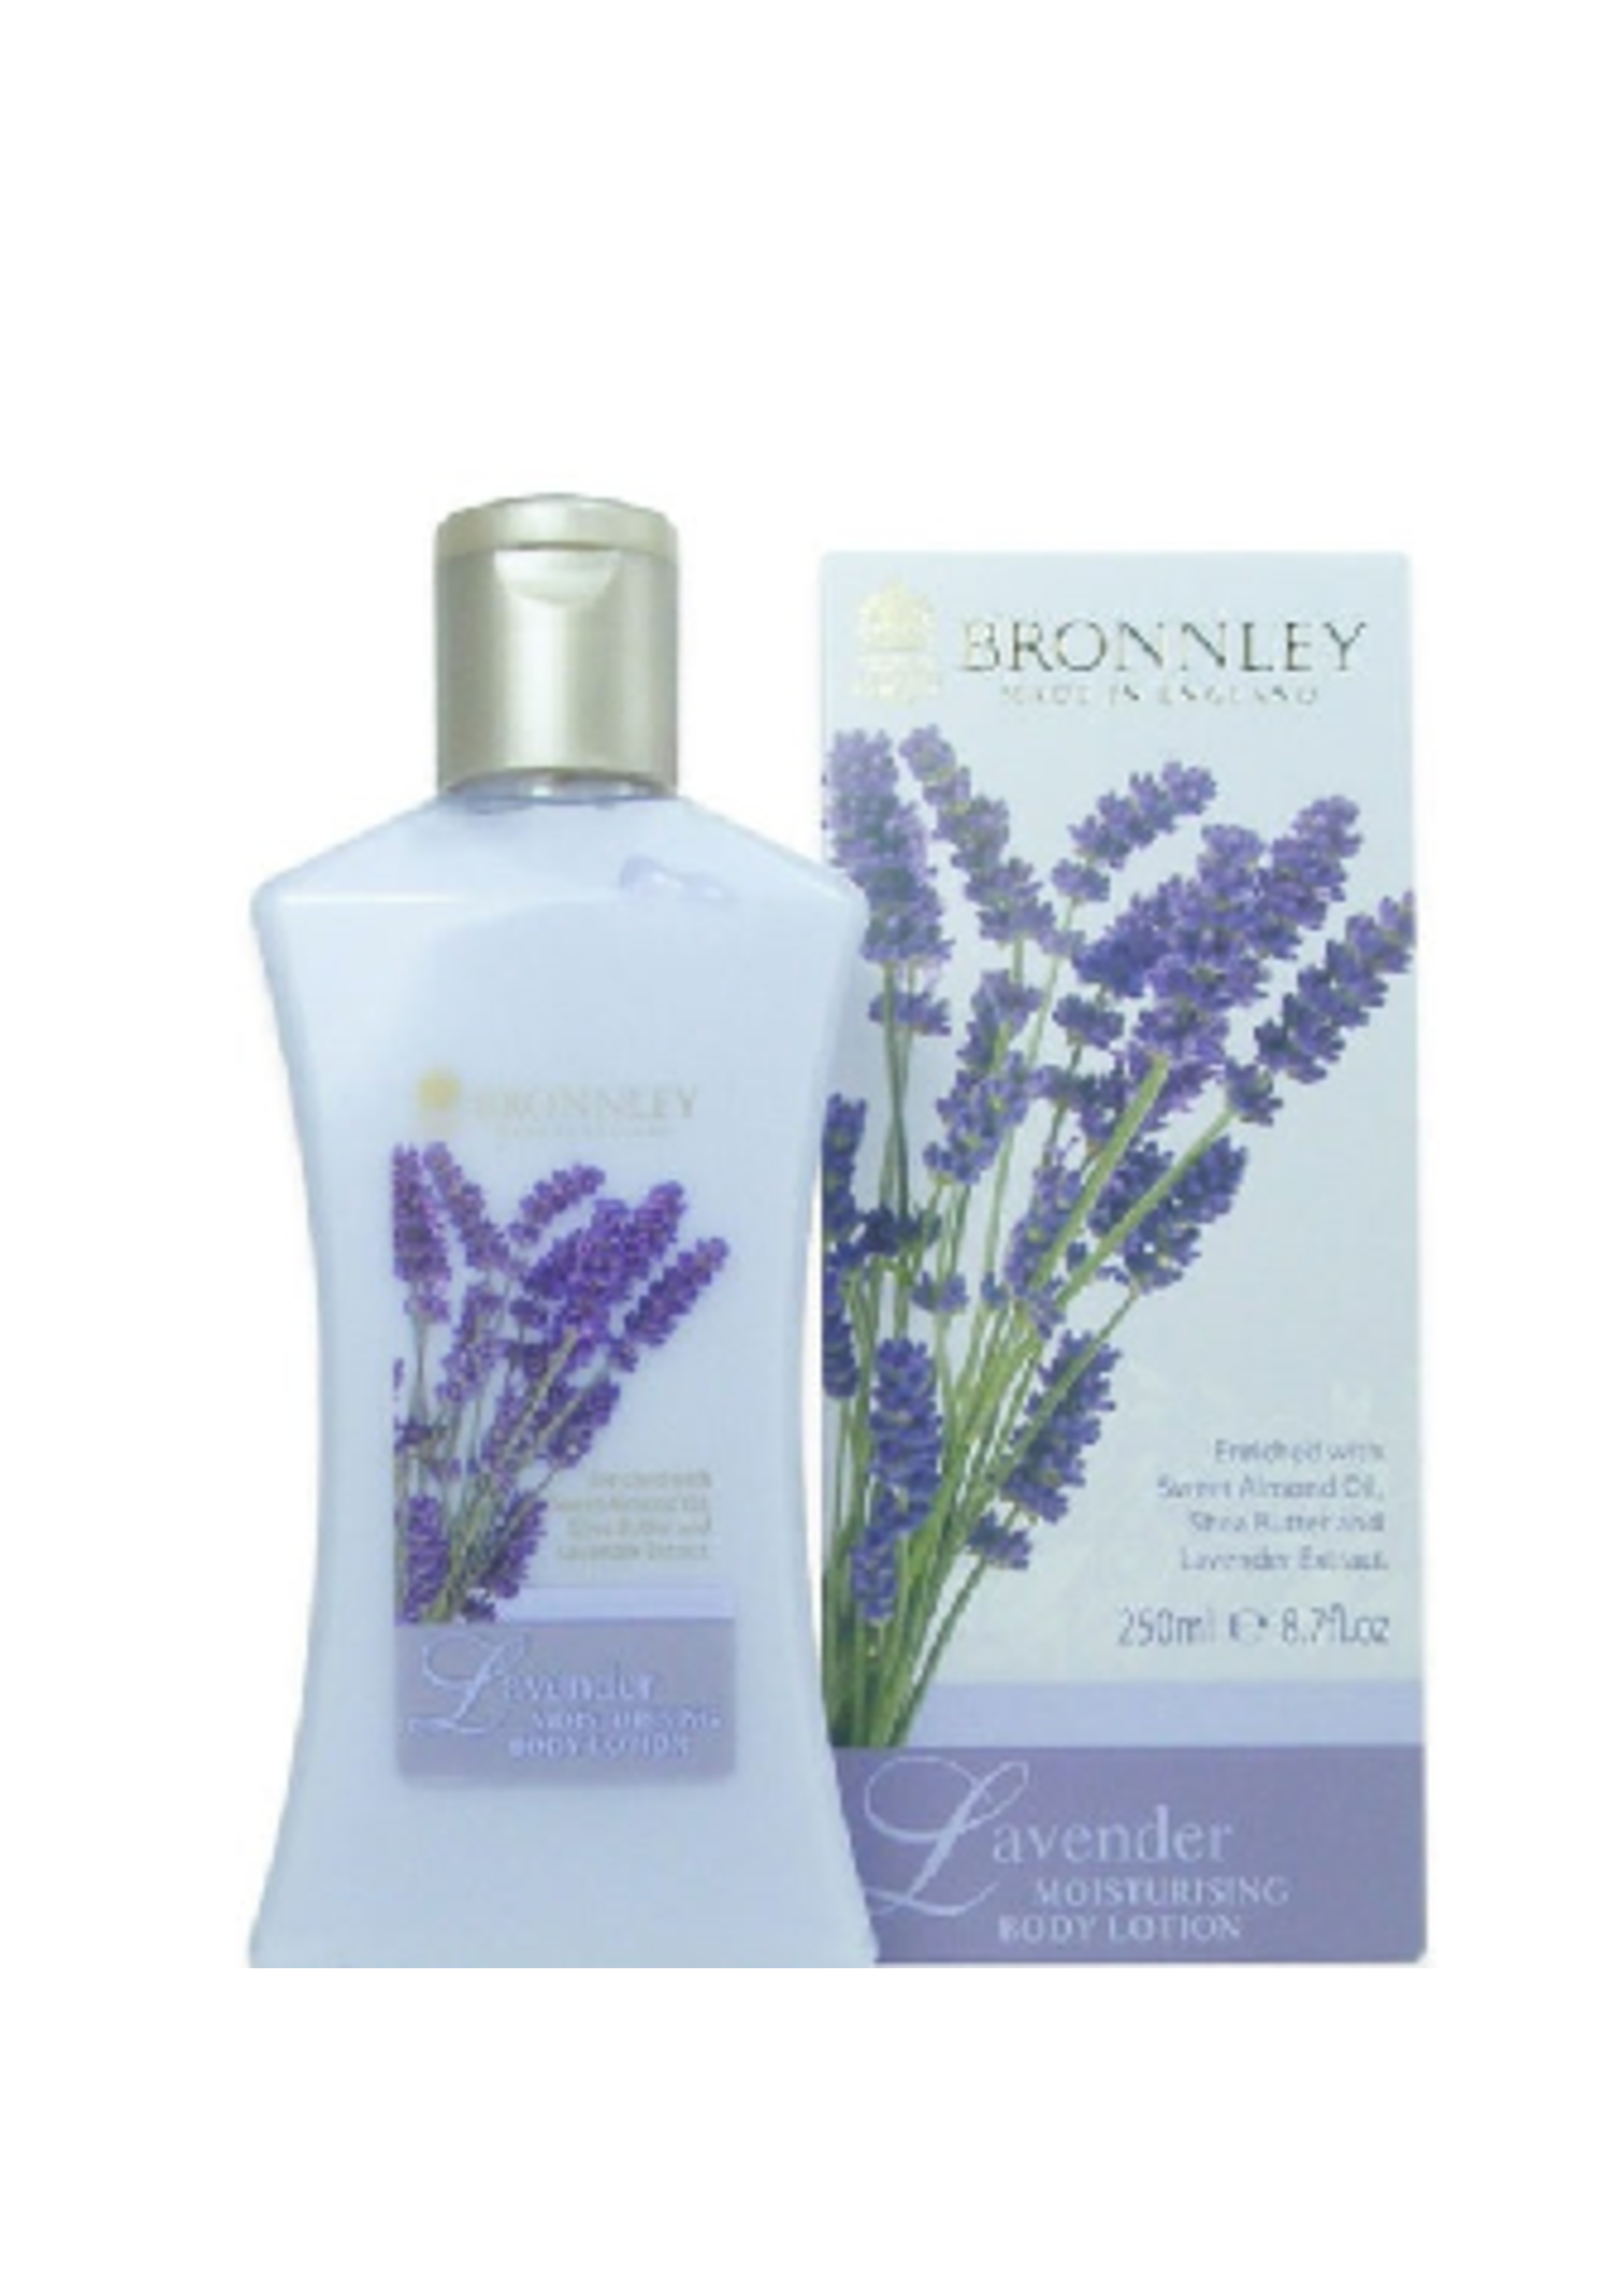 Bronnley Lavender Body Lotion - Bronnley